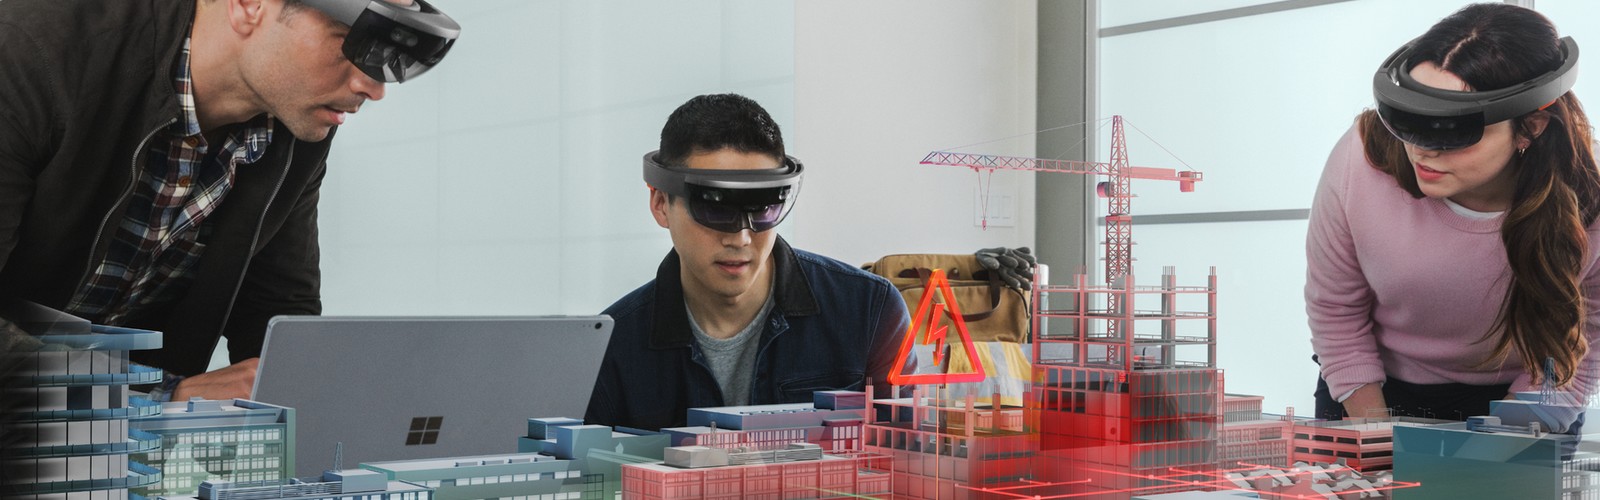 HoloLens : 4 cas d’usage pour l’industrie